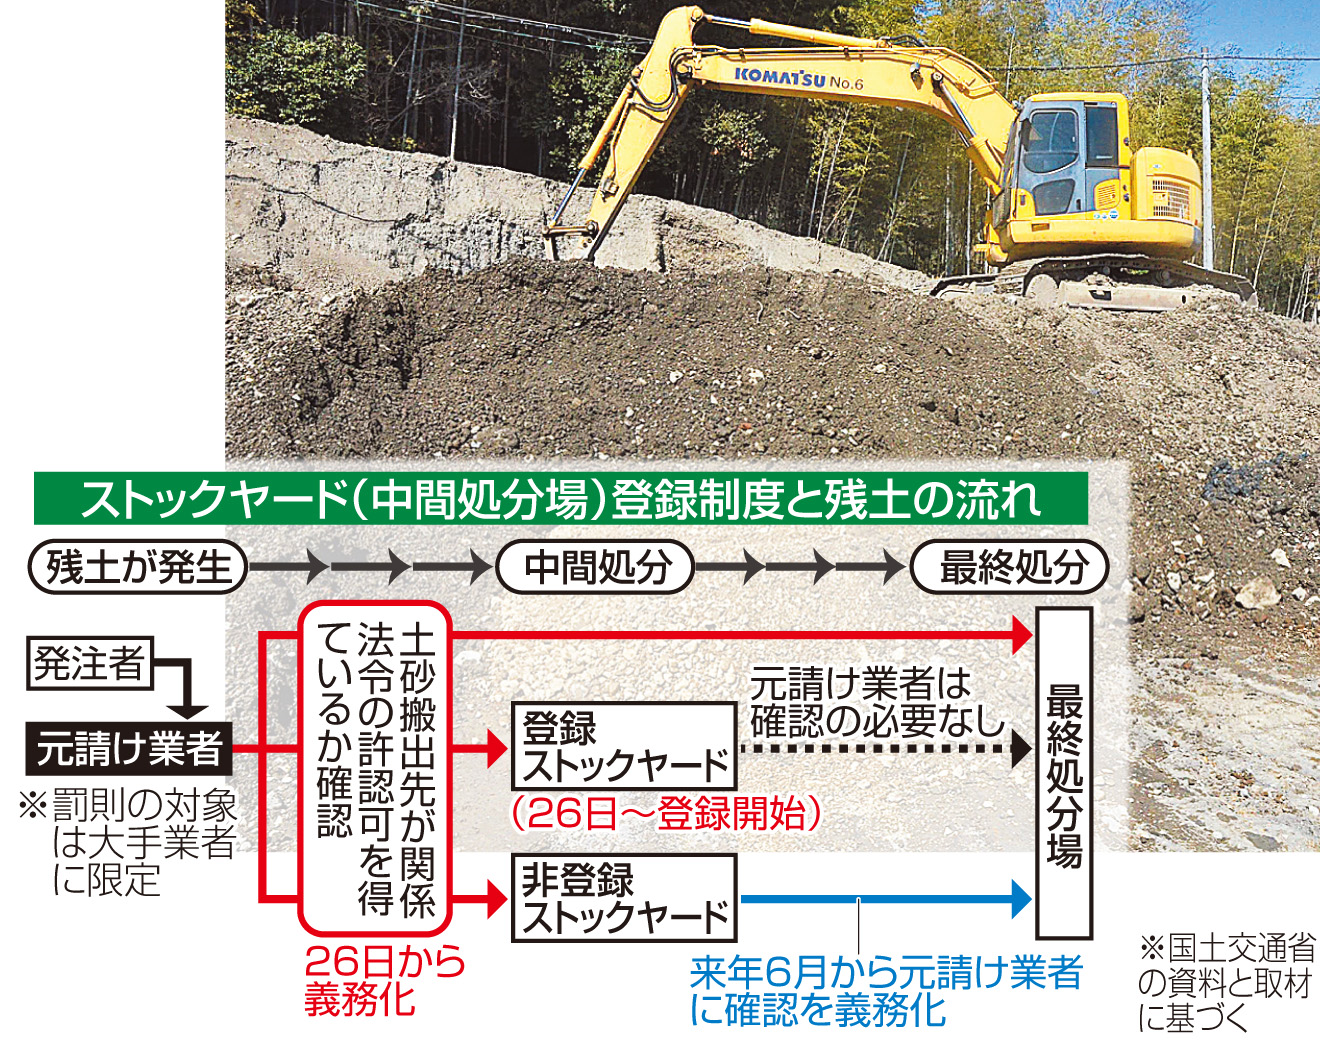 工事現場の残土が持ち込まれる静岡県内のストックヤード。規制区域内は盛り土規制法などの許可が必要になる